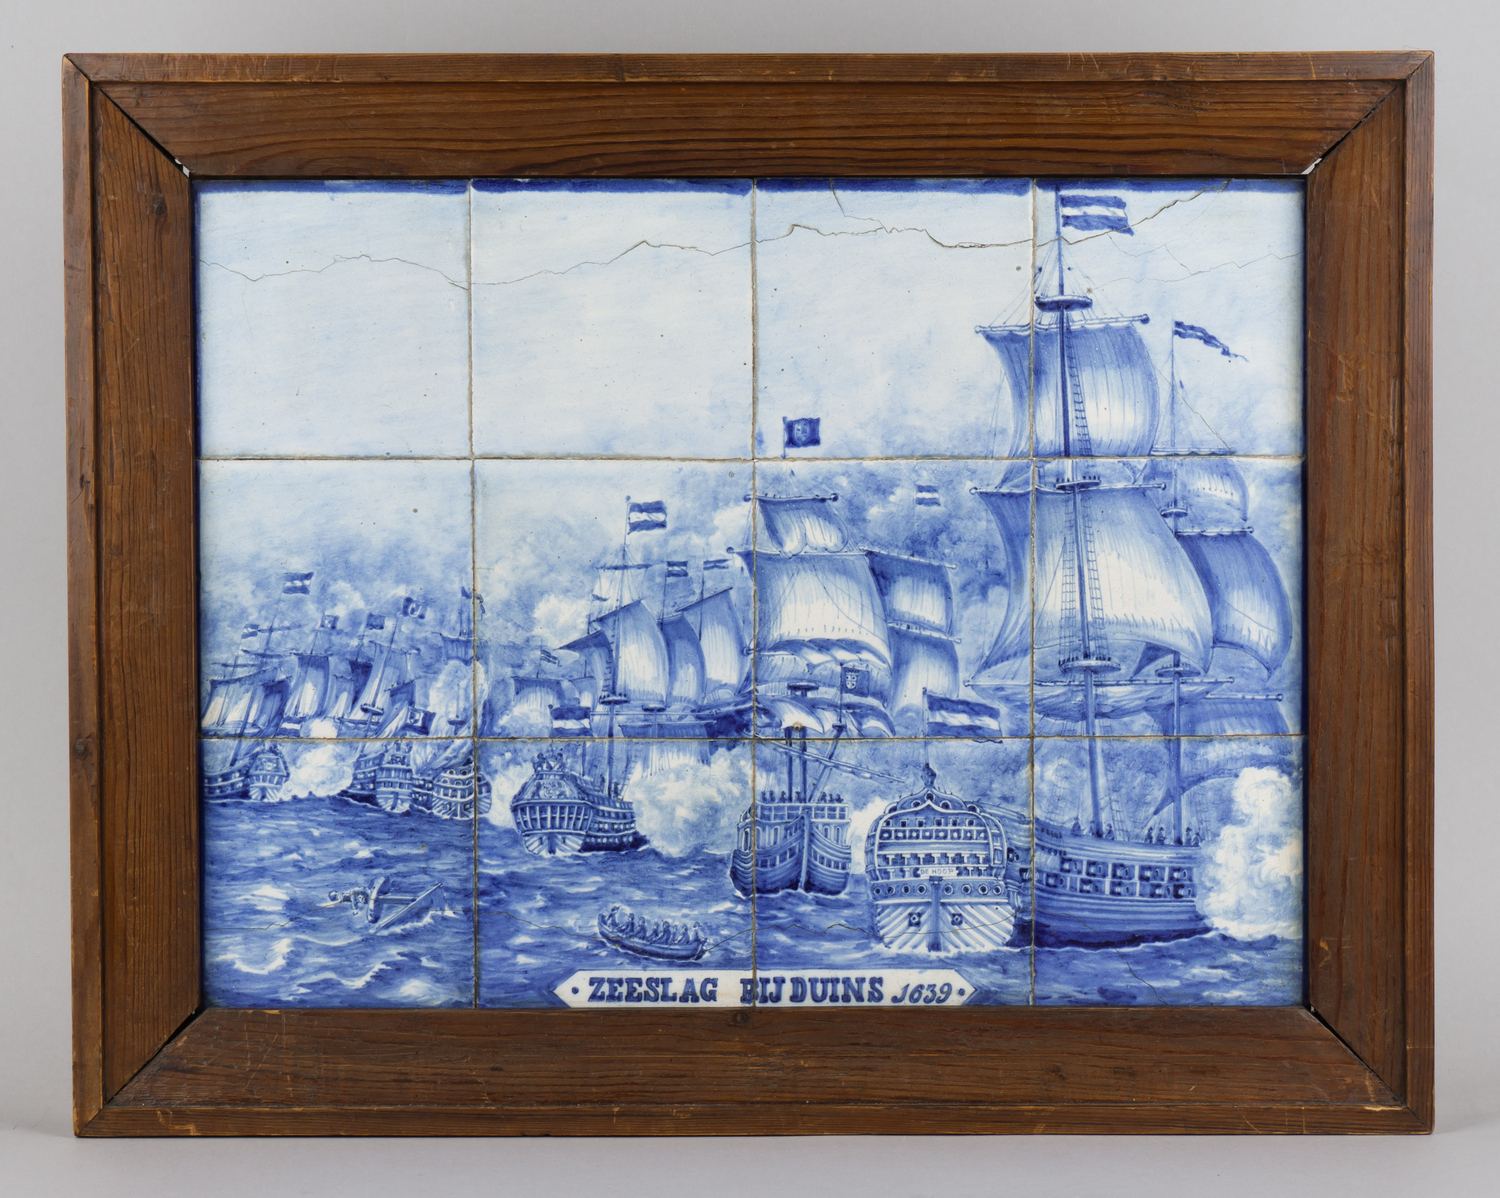 Панно из изразцов с изображением морского сражения у Даунса в 1639 году.<br>Голландия, конец XIX века.